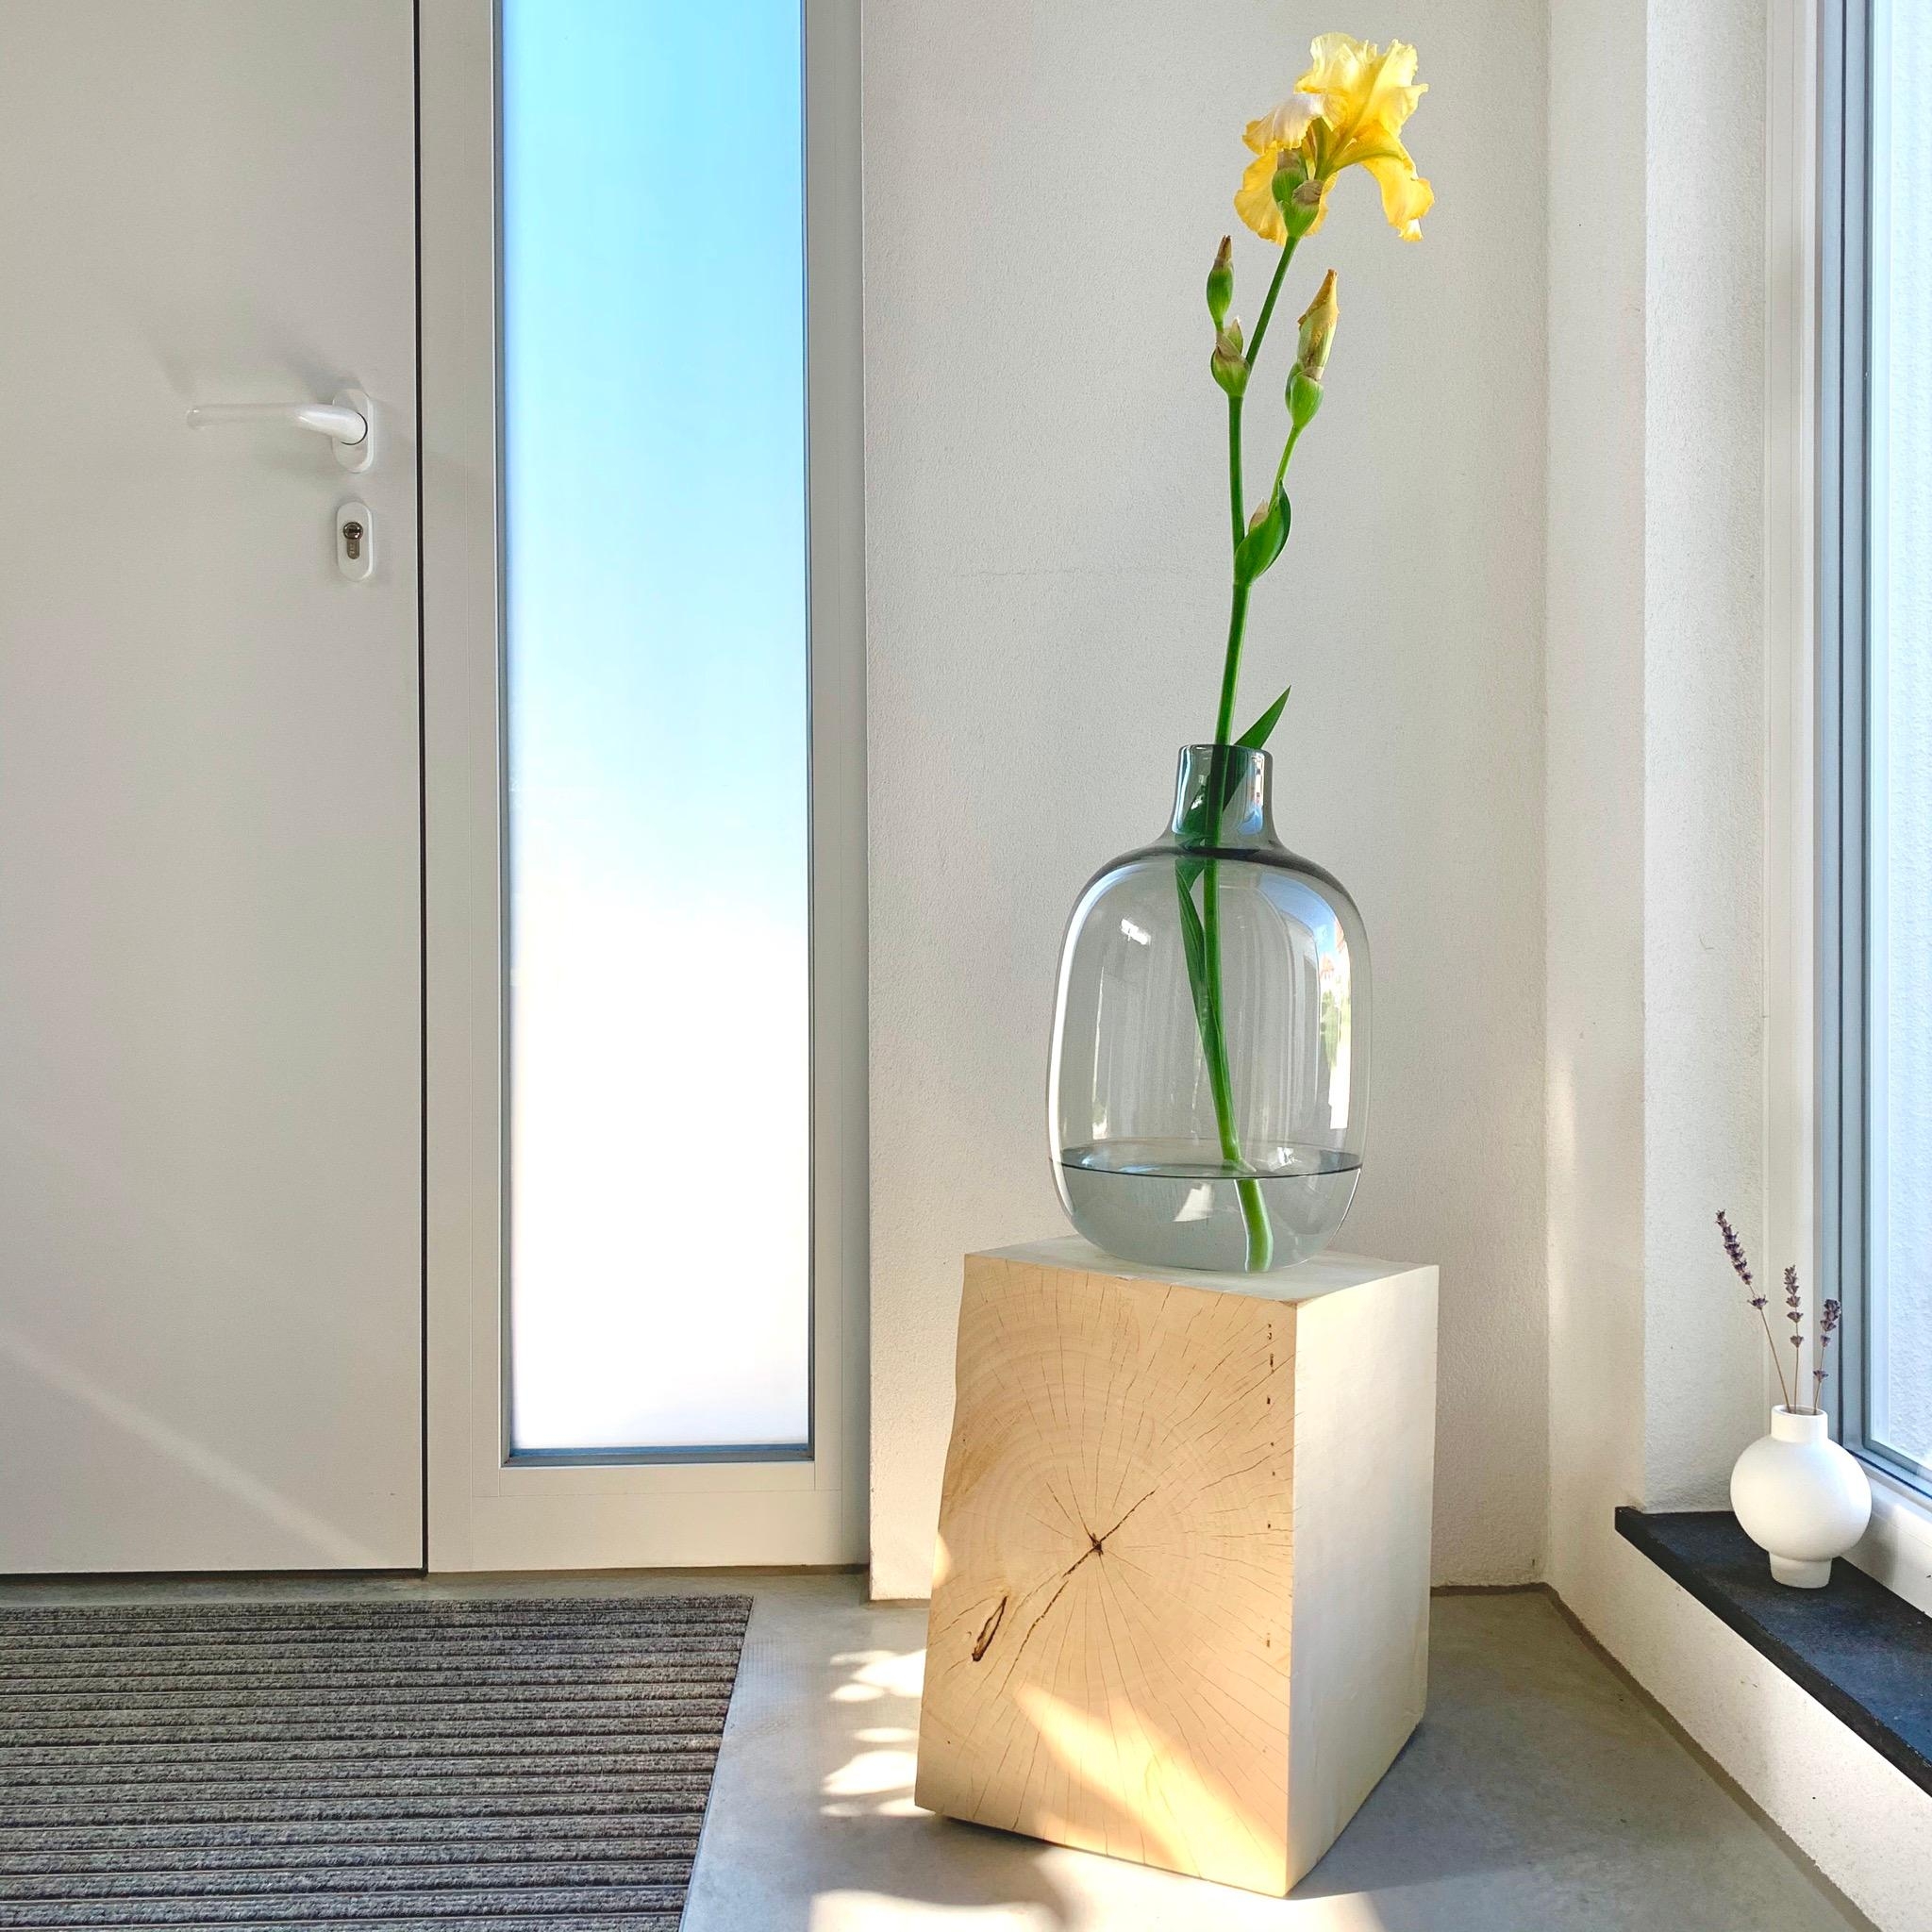 Unser neuer Holzwürfel ist fertig und schmückt nun mit frischen Blumen unseren Eingangsbereich. #Blumendeko #diy